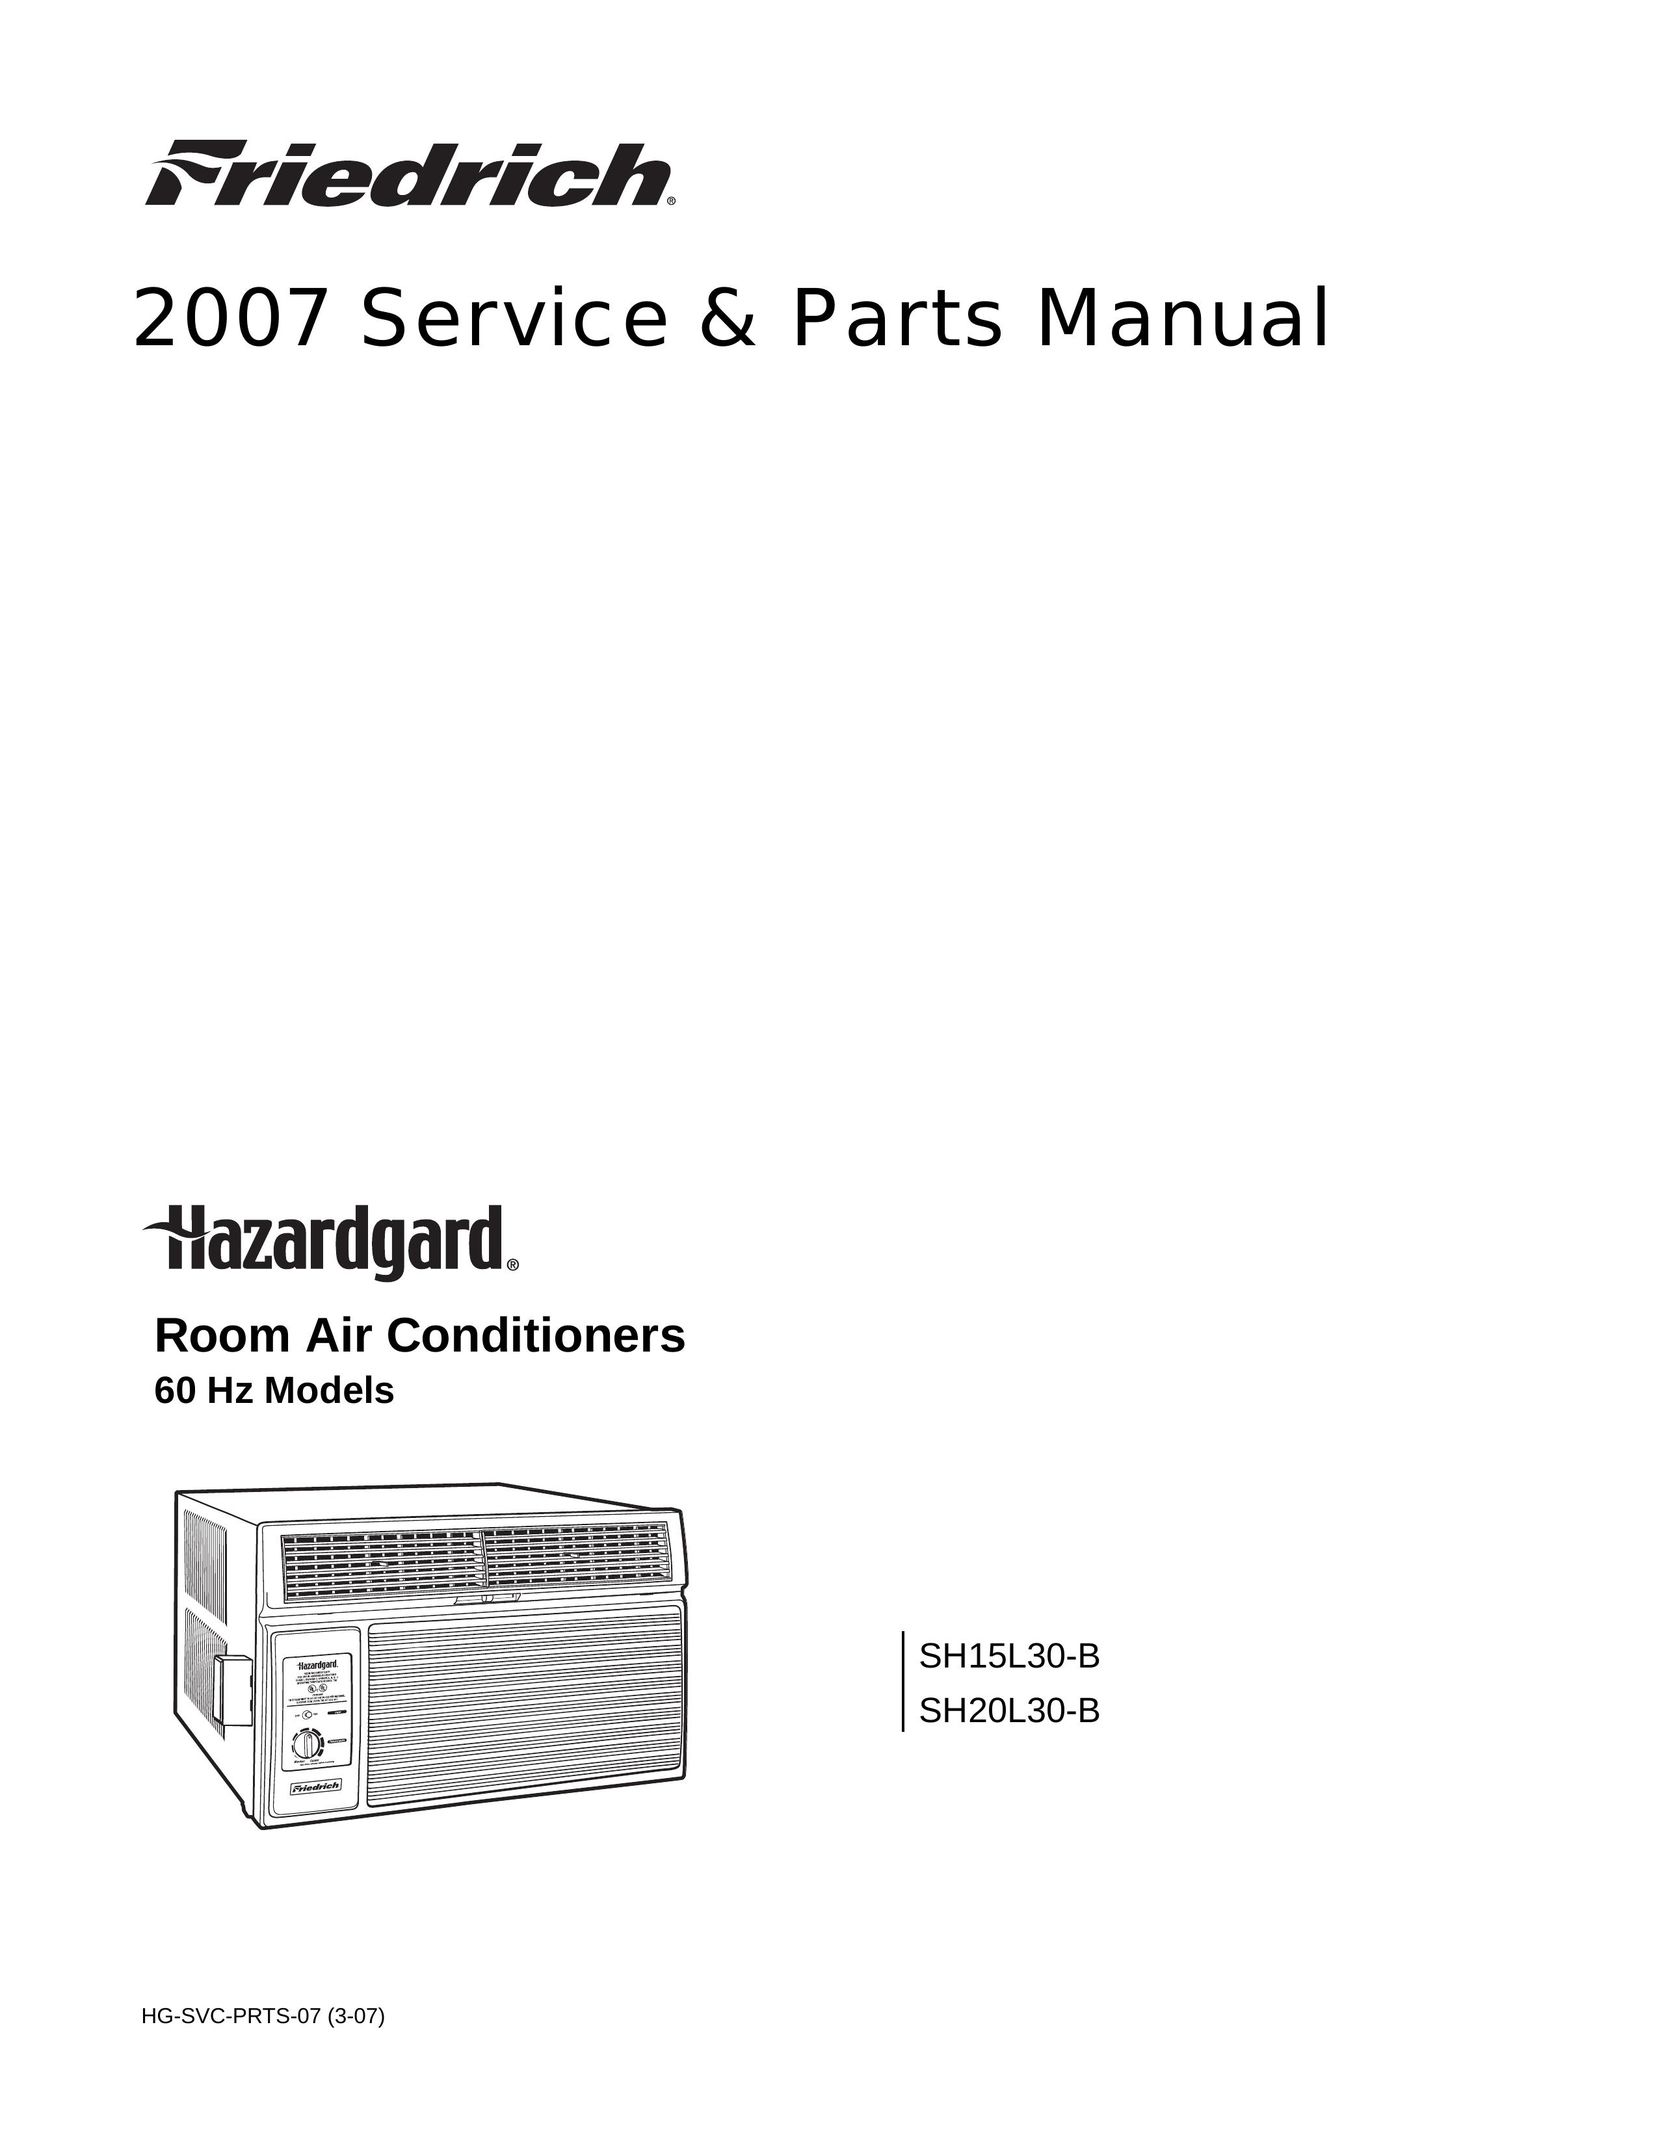 Friedrich 60 Hz Air Conditioner User Manual